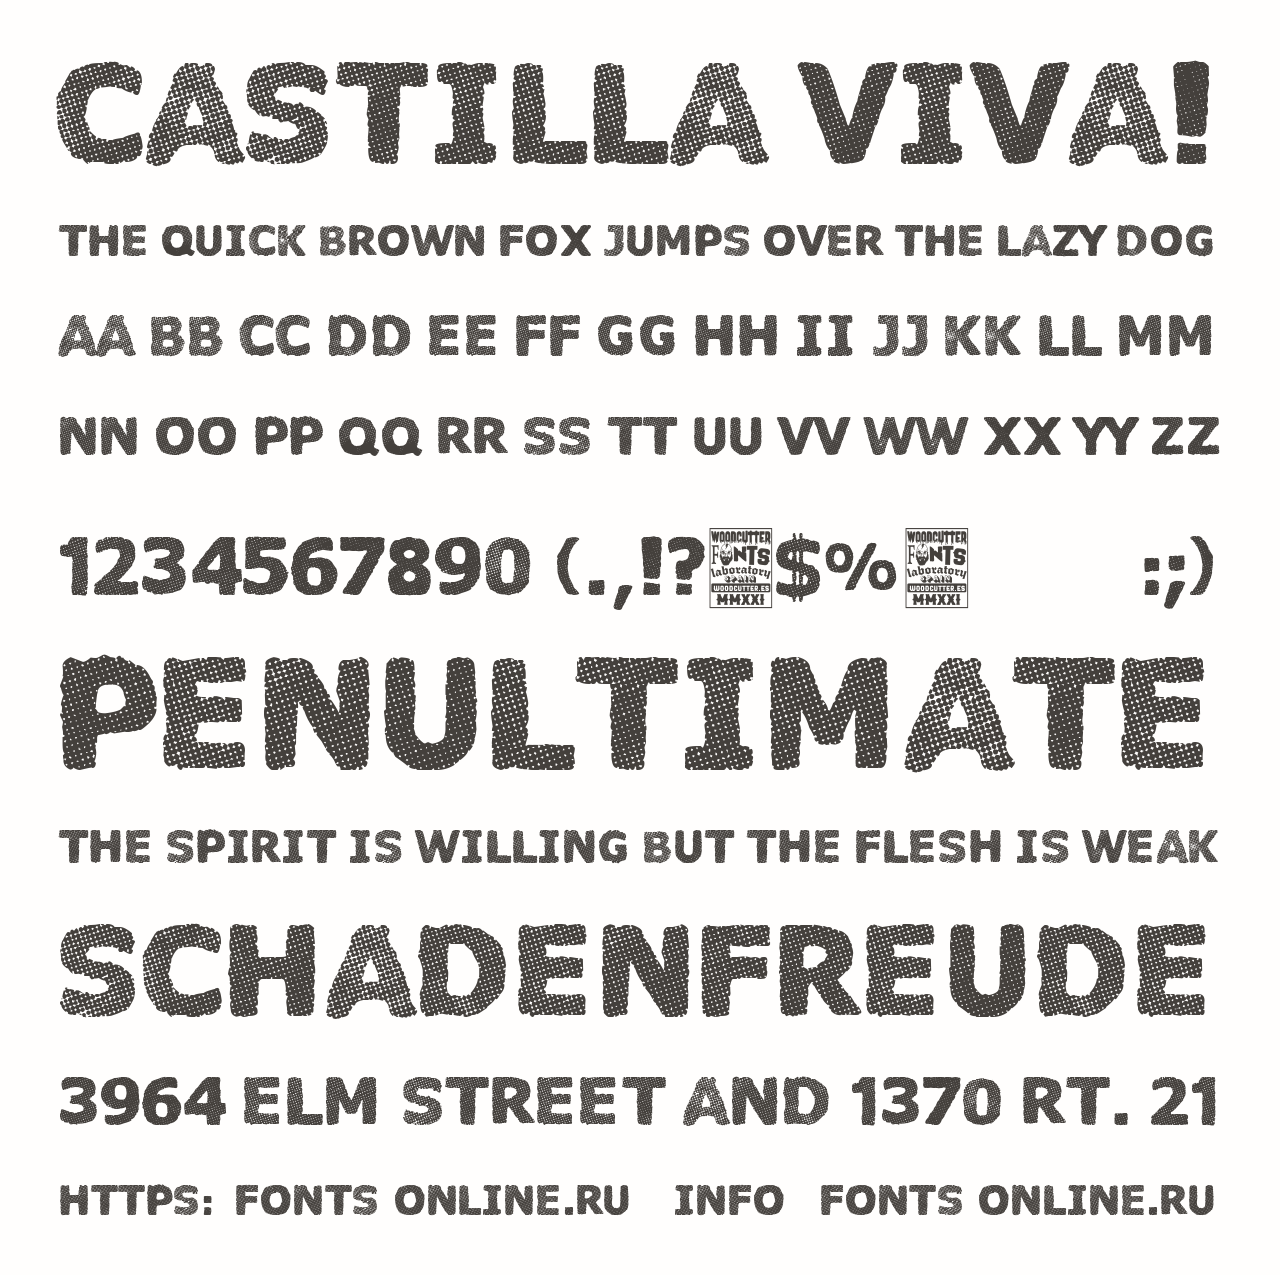 Шрифт Castilla Viva!